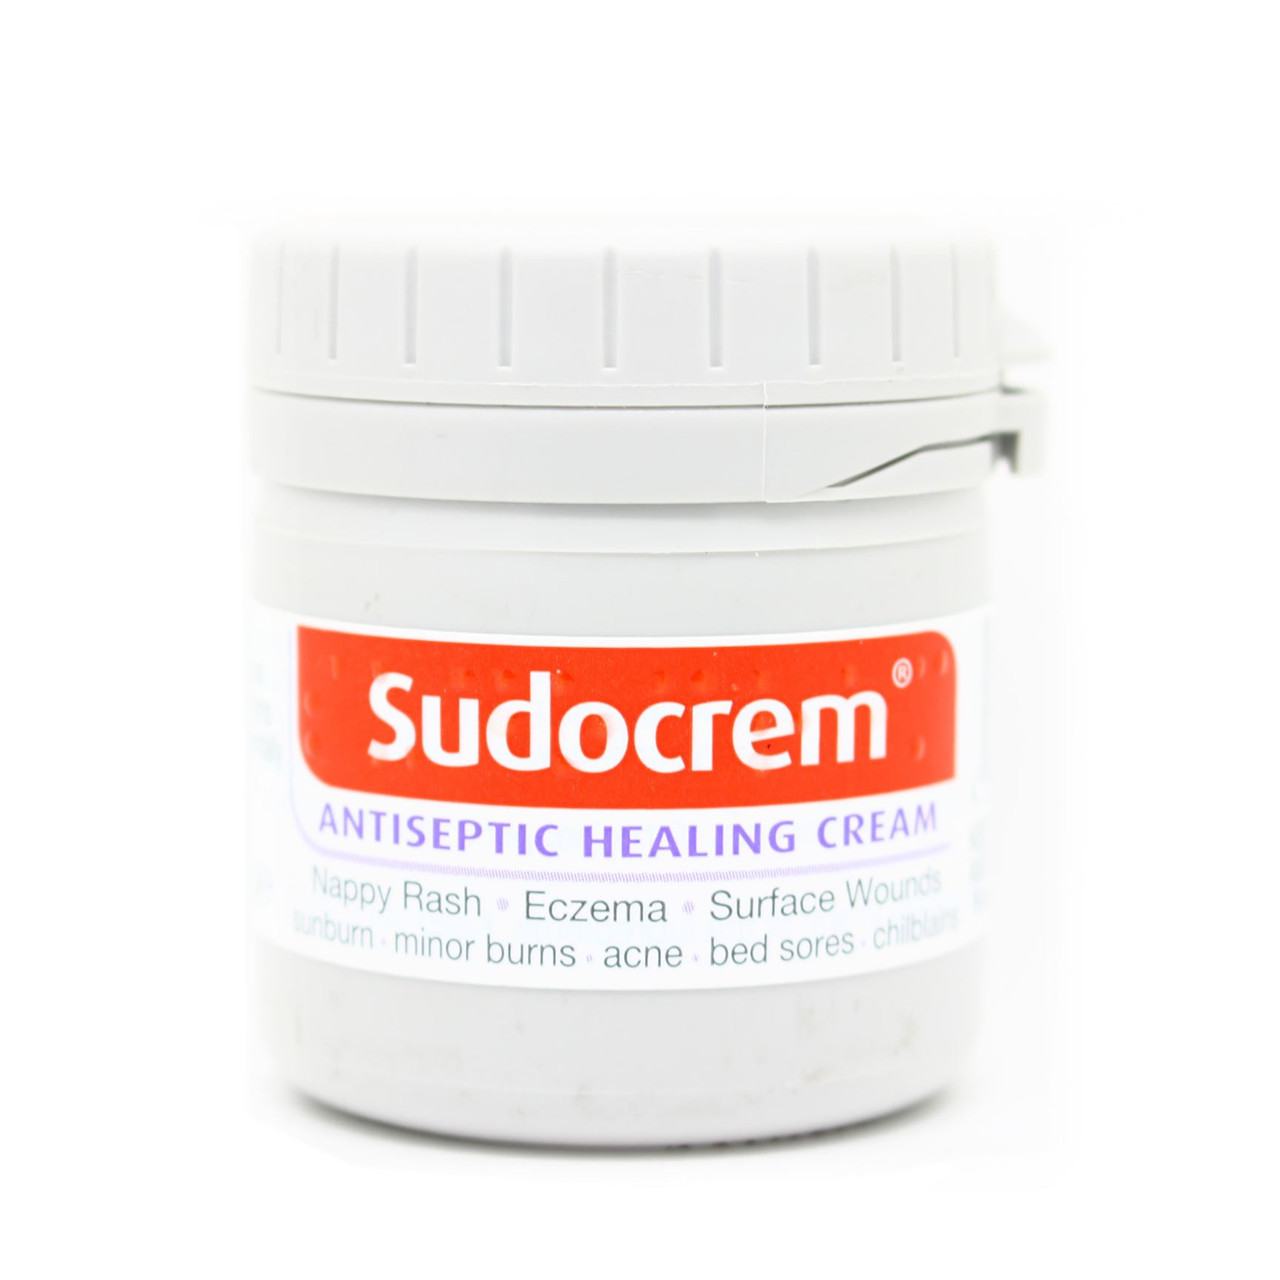 Sudocrem Antiseptic Healing Cream Mini Tub 60g - Go Tiny